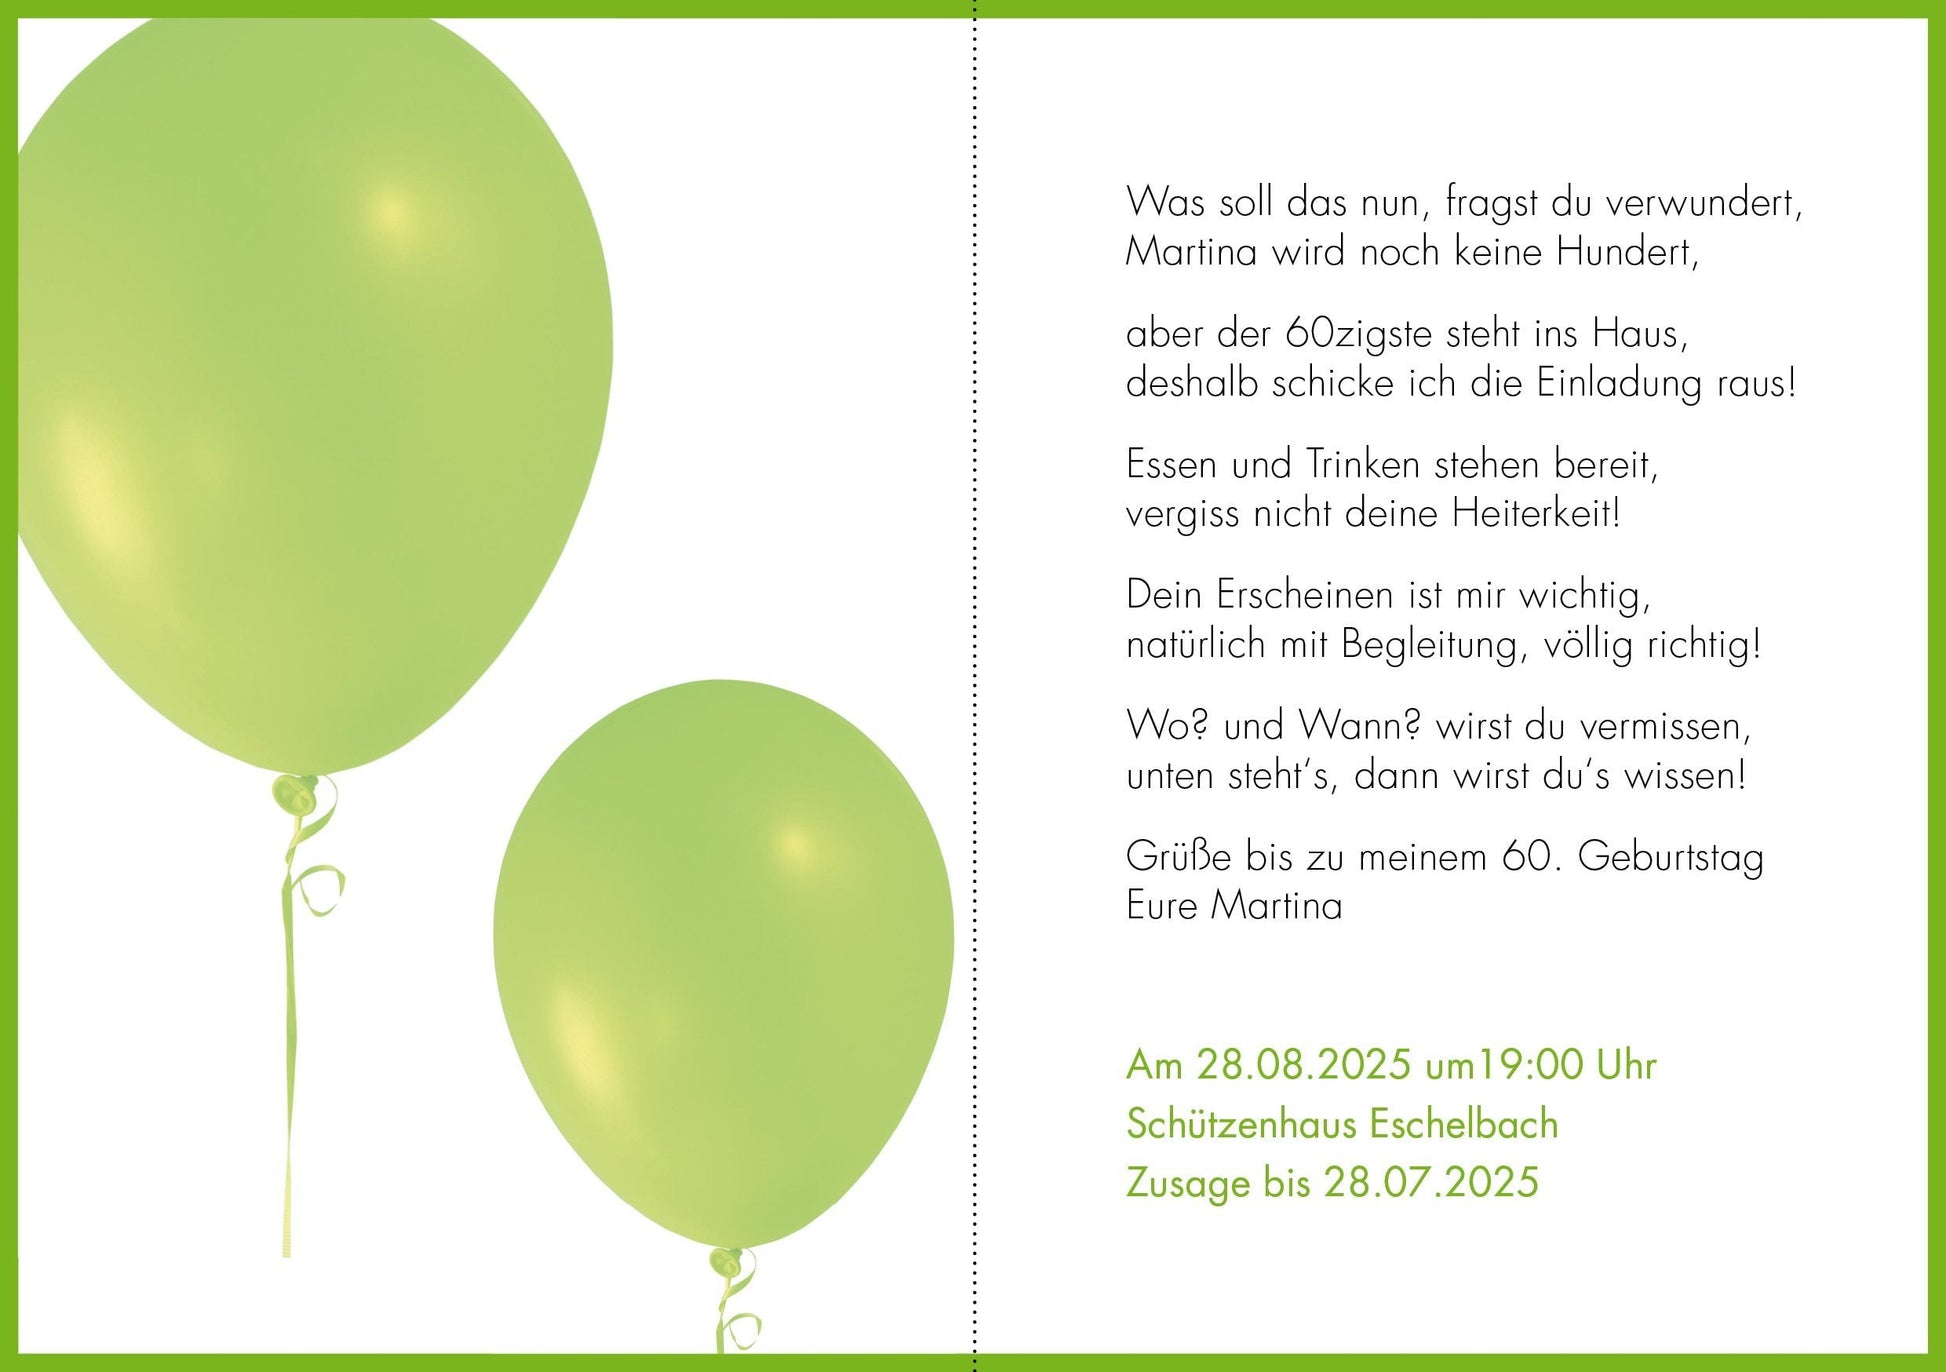 Kraftpapier-Einladung zum 18. Geburtstag mit rosa Luftballon